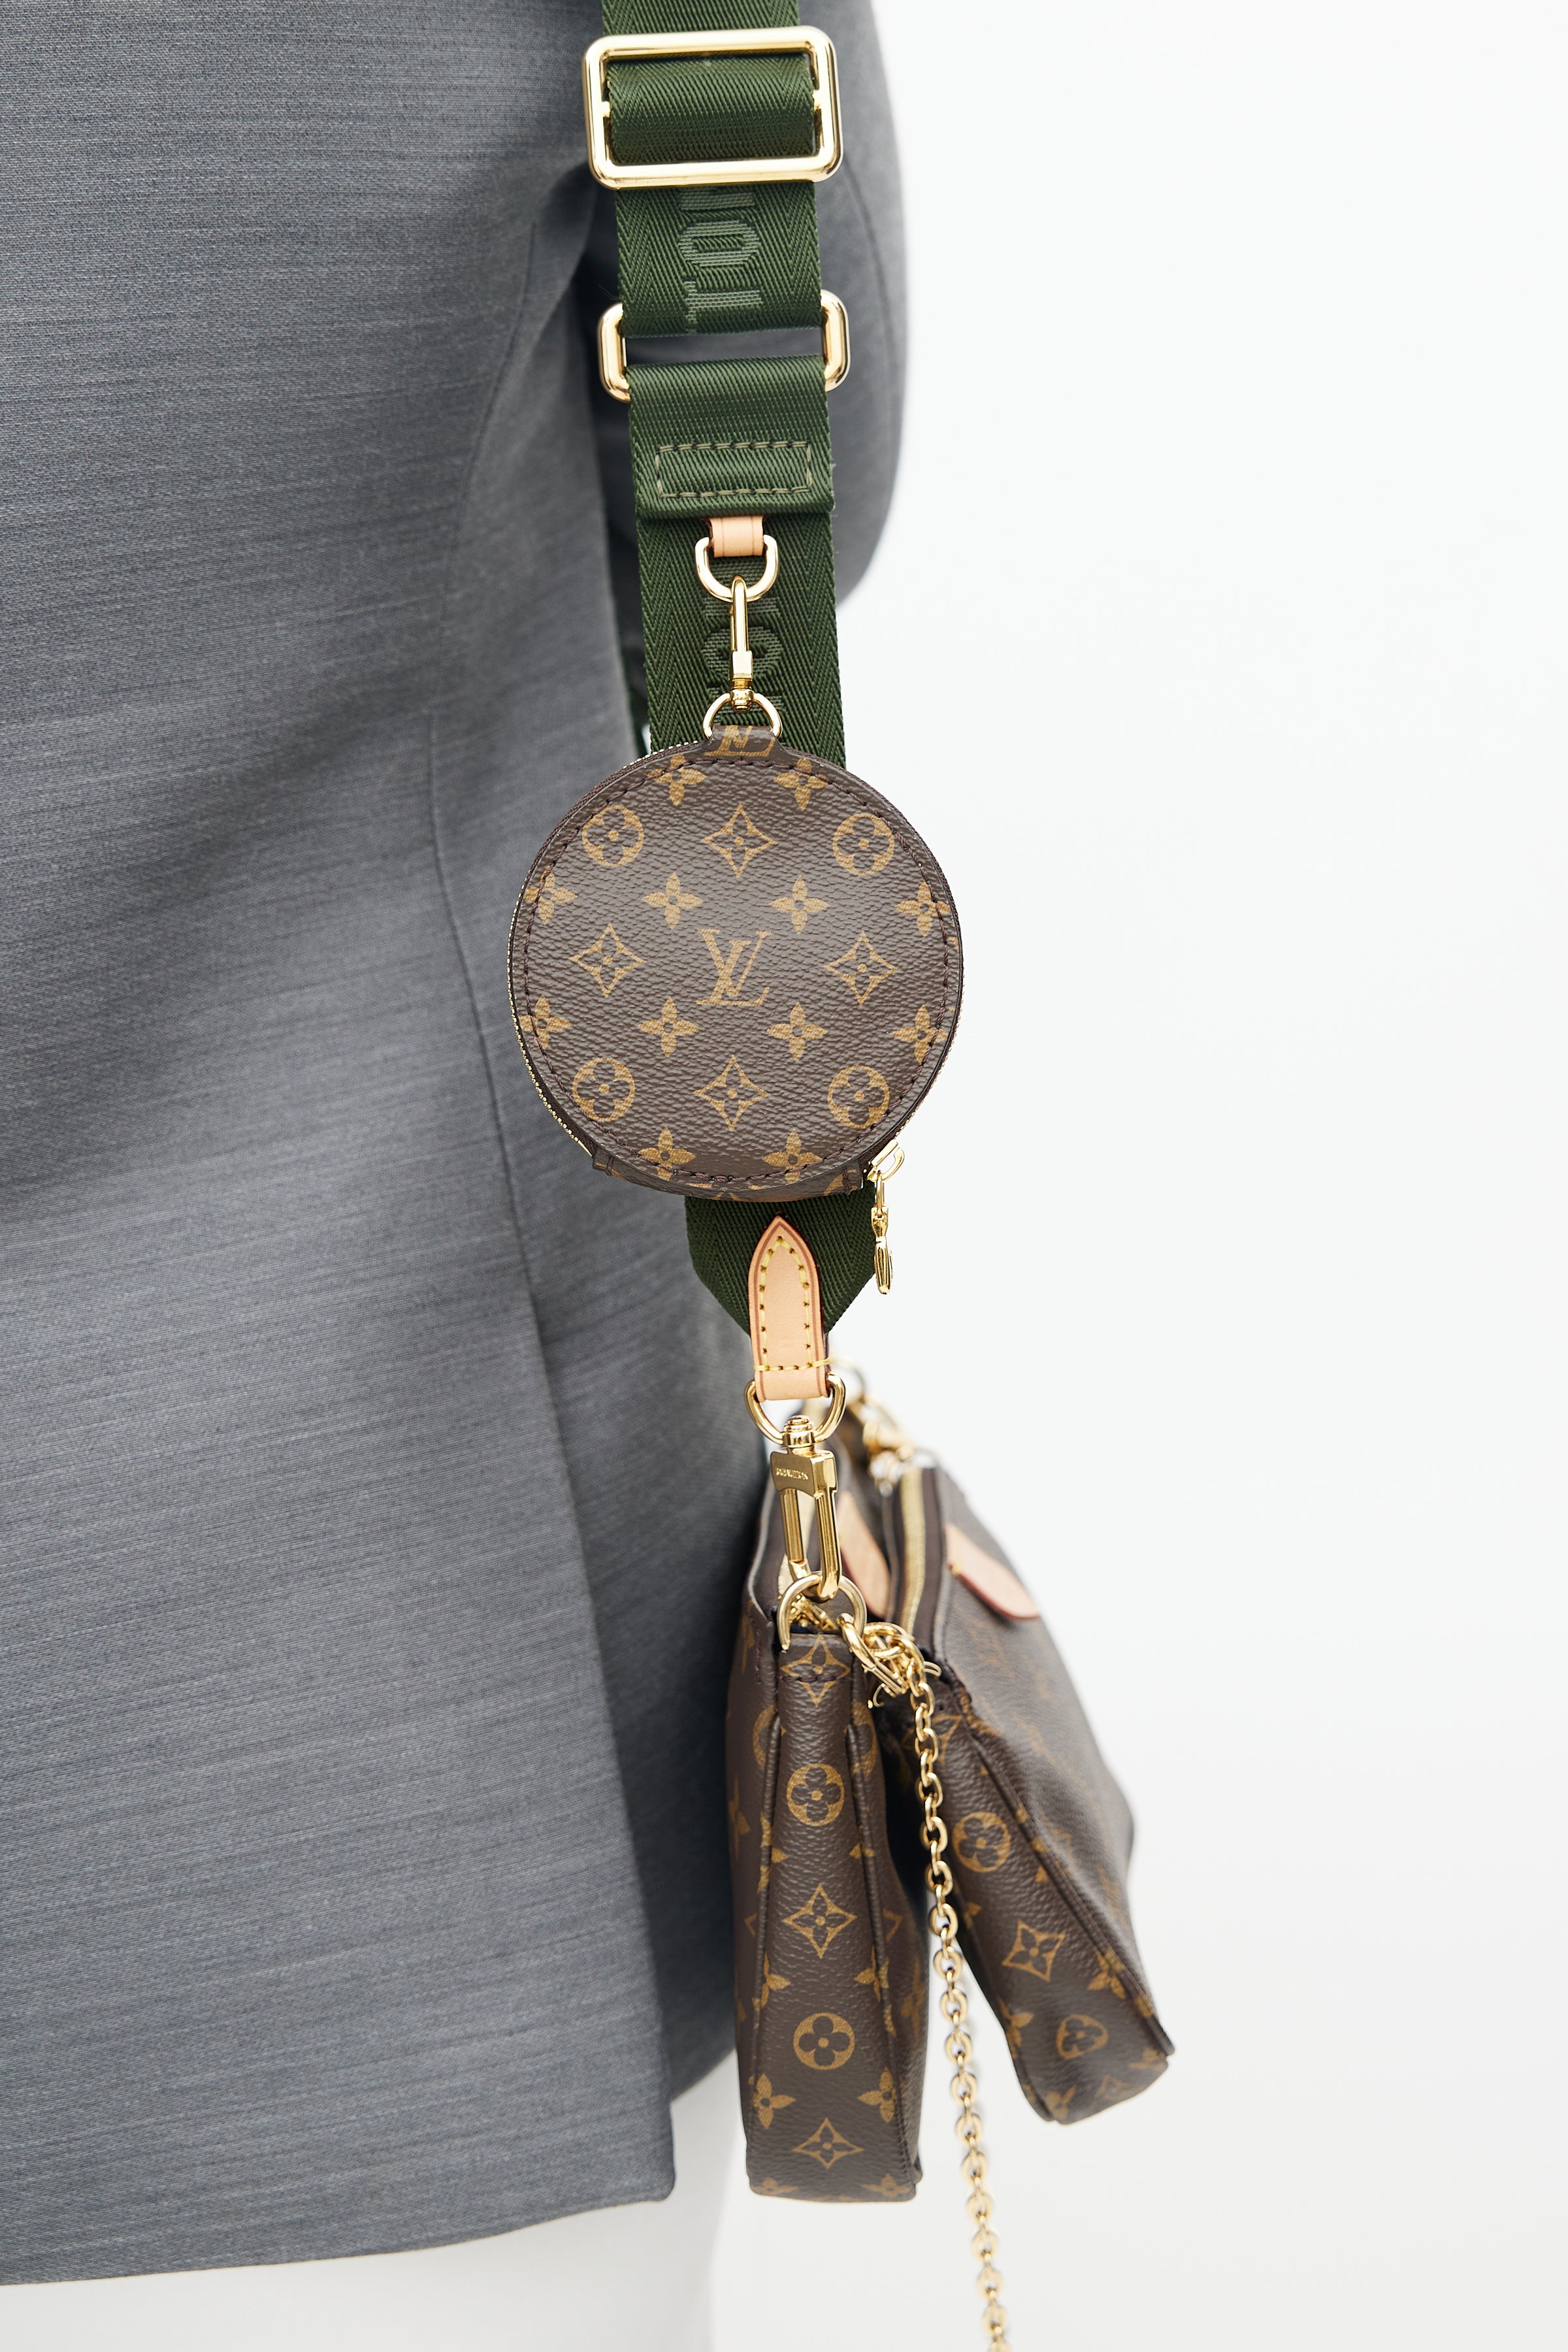 Louis Vuitton // 2001 Brown Monogram Pochette Accessoires Bag – VSP  Consignment